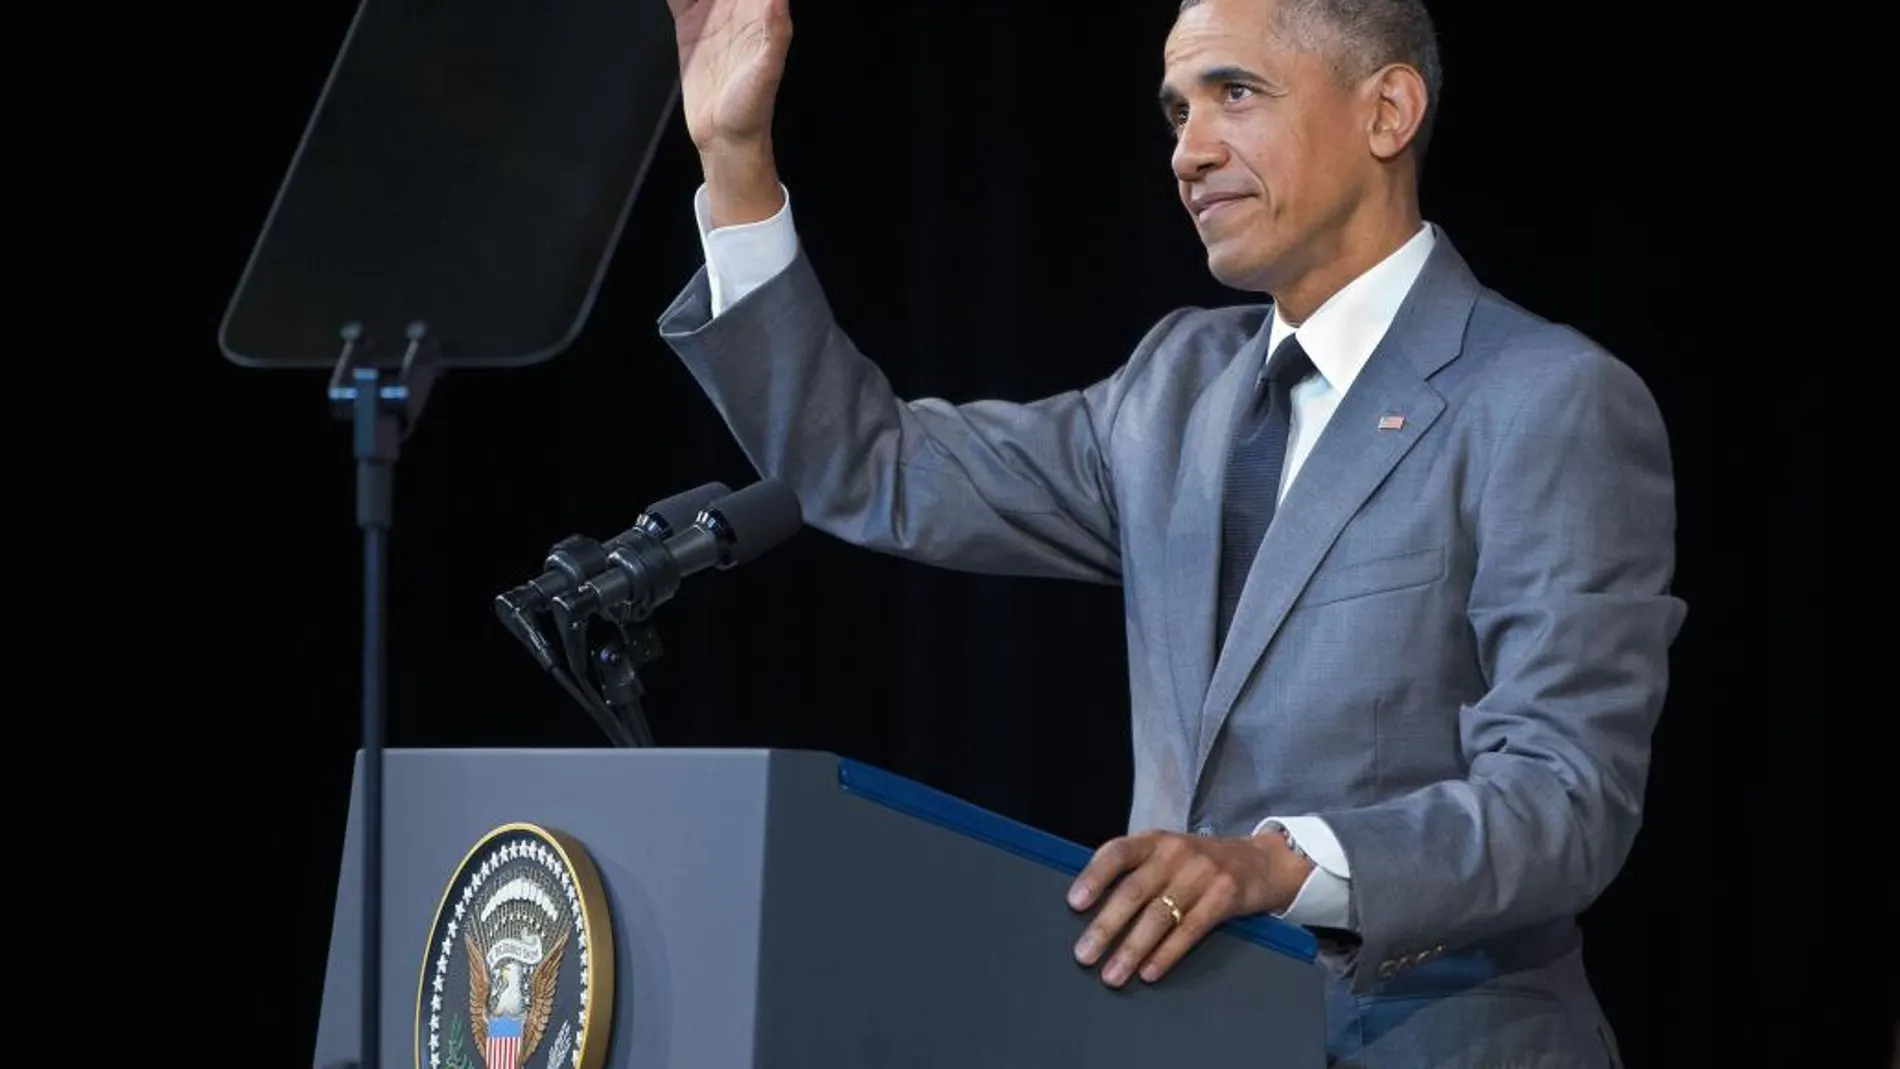 El presidente Obama, durante su discurso en el Gran Teatro de la Habana.